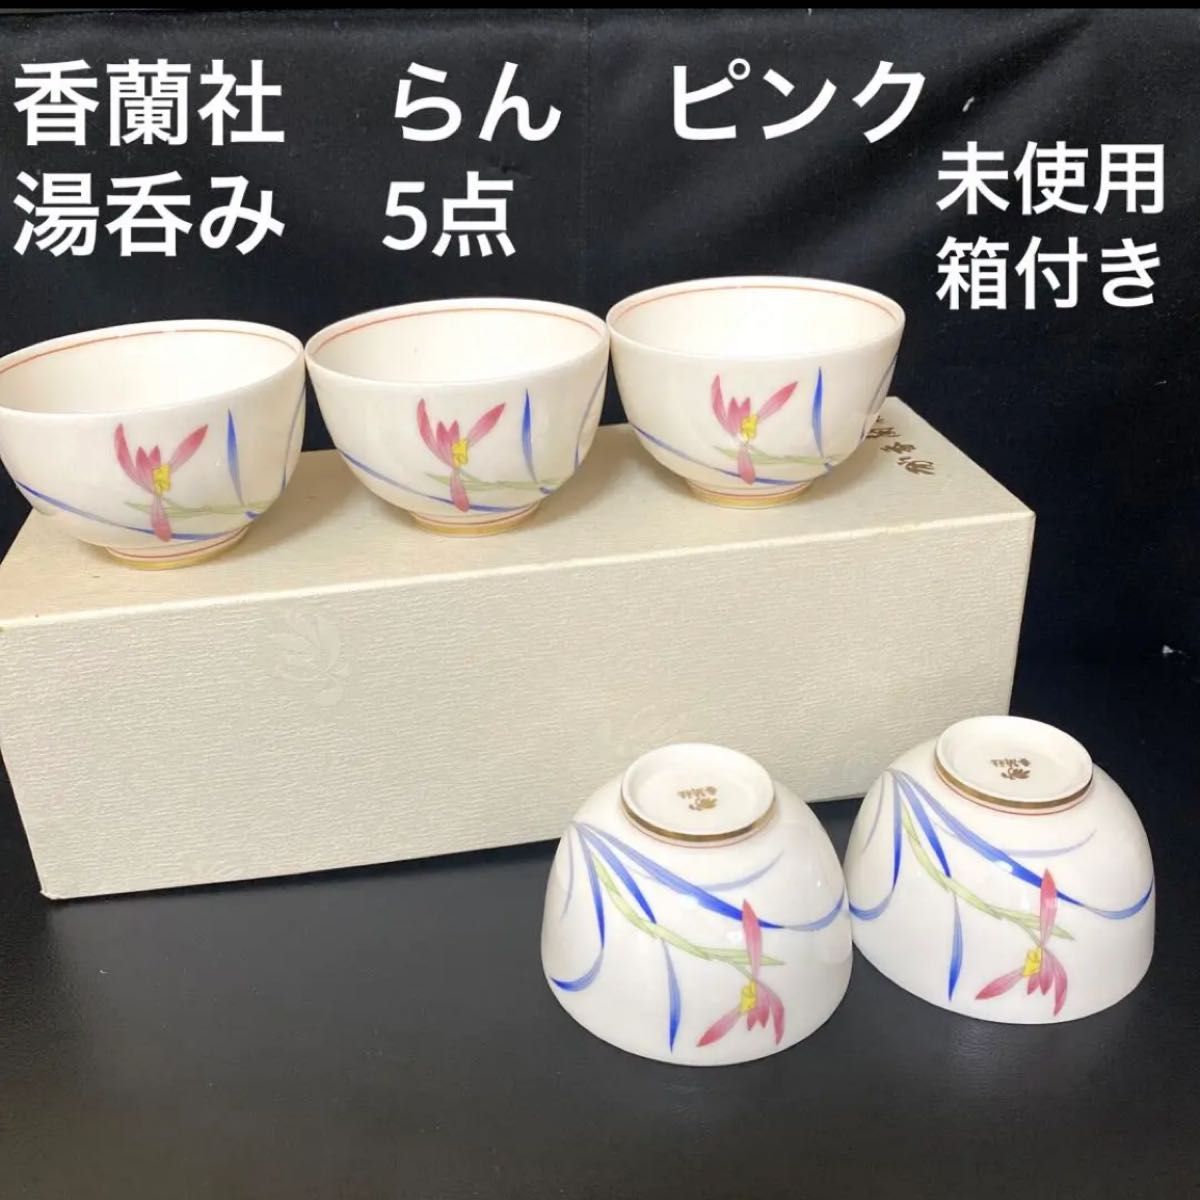 H214、有田焼 香蘭社 ピンク蘭 湯呑・茶托 5客セット - 食器